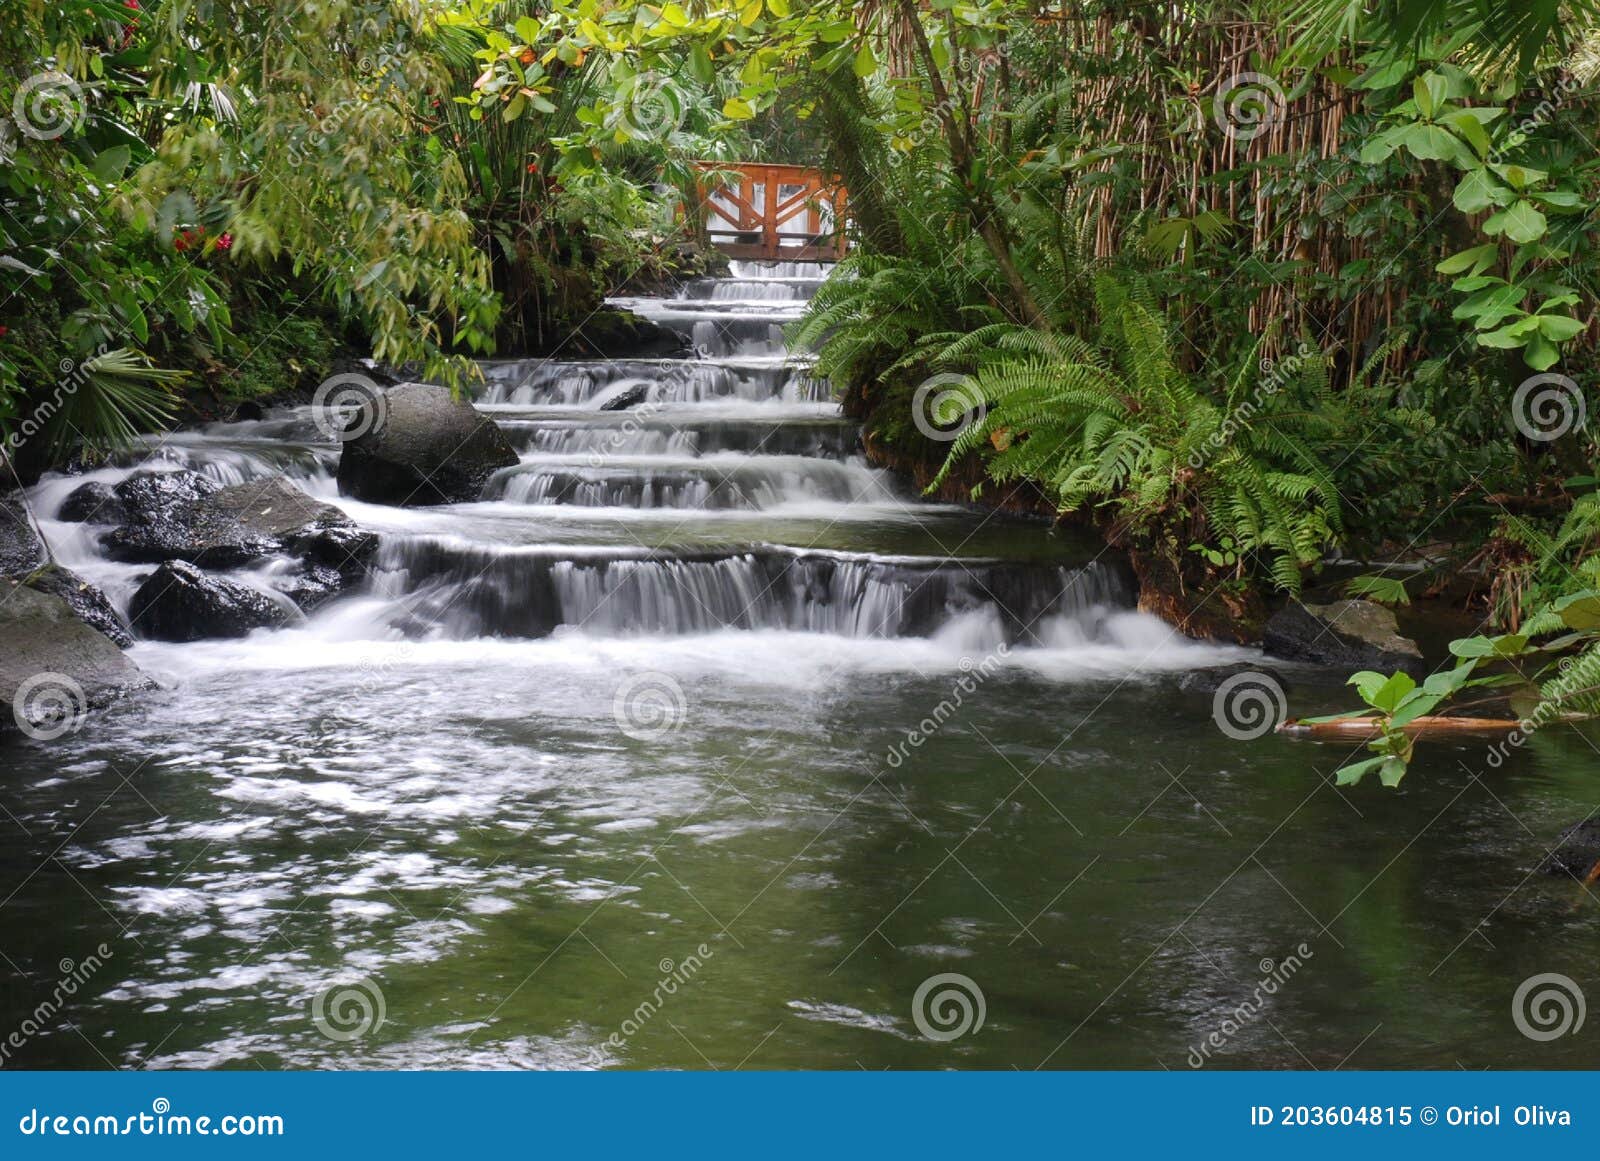 Río Termal En Las Aguas Termales De Tabacon En Costa Rica Imagen de archivo Imagen de bosque: 203604815